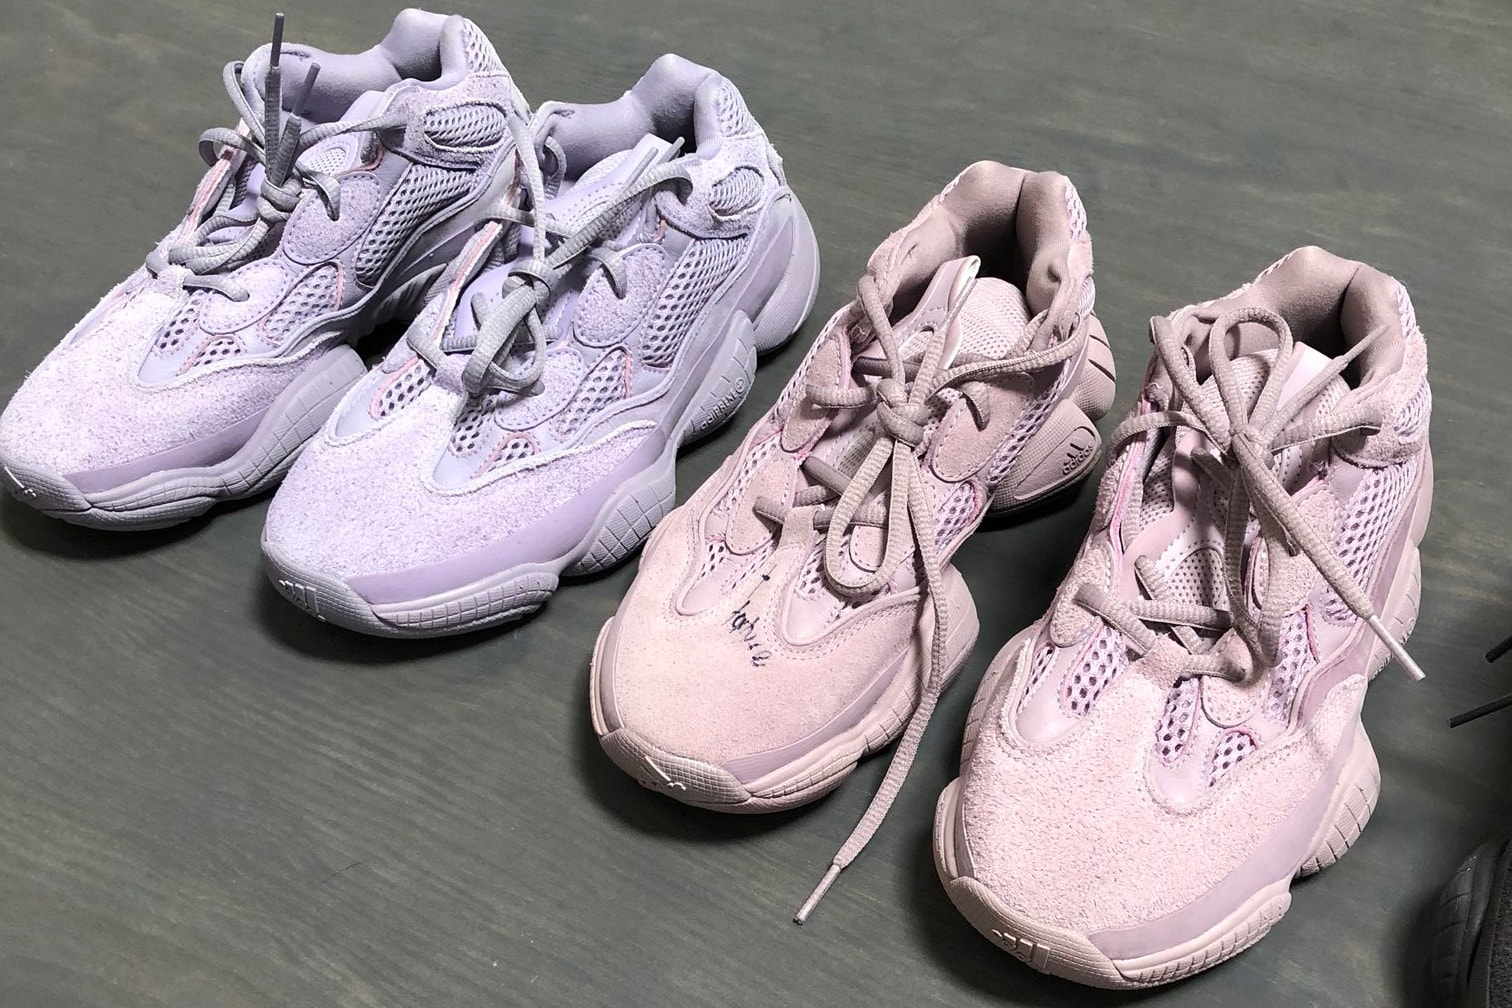 Kanye West New YEEZYS 2018 adidas originals yeezy 350 v2 yeezy 700 yeezy 500 sandals basketball shoes sneakers ye